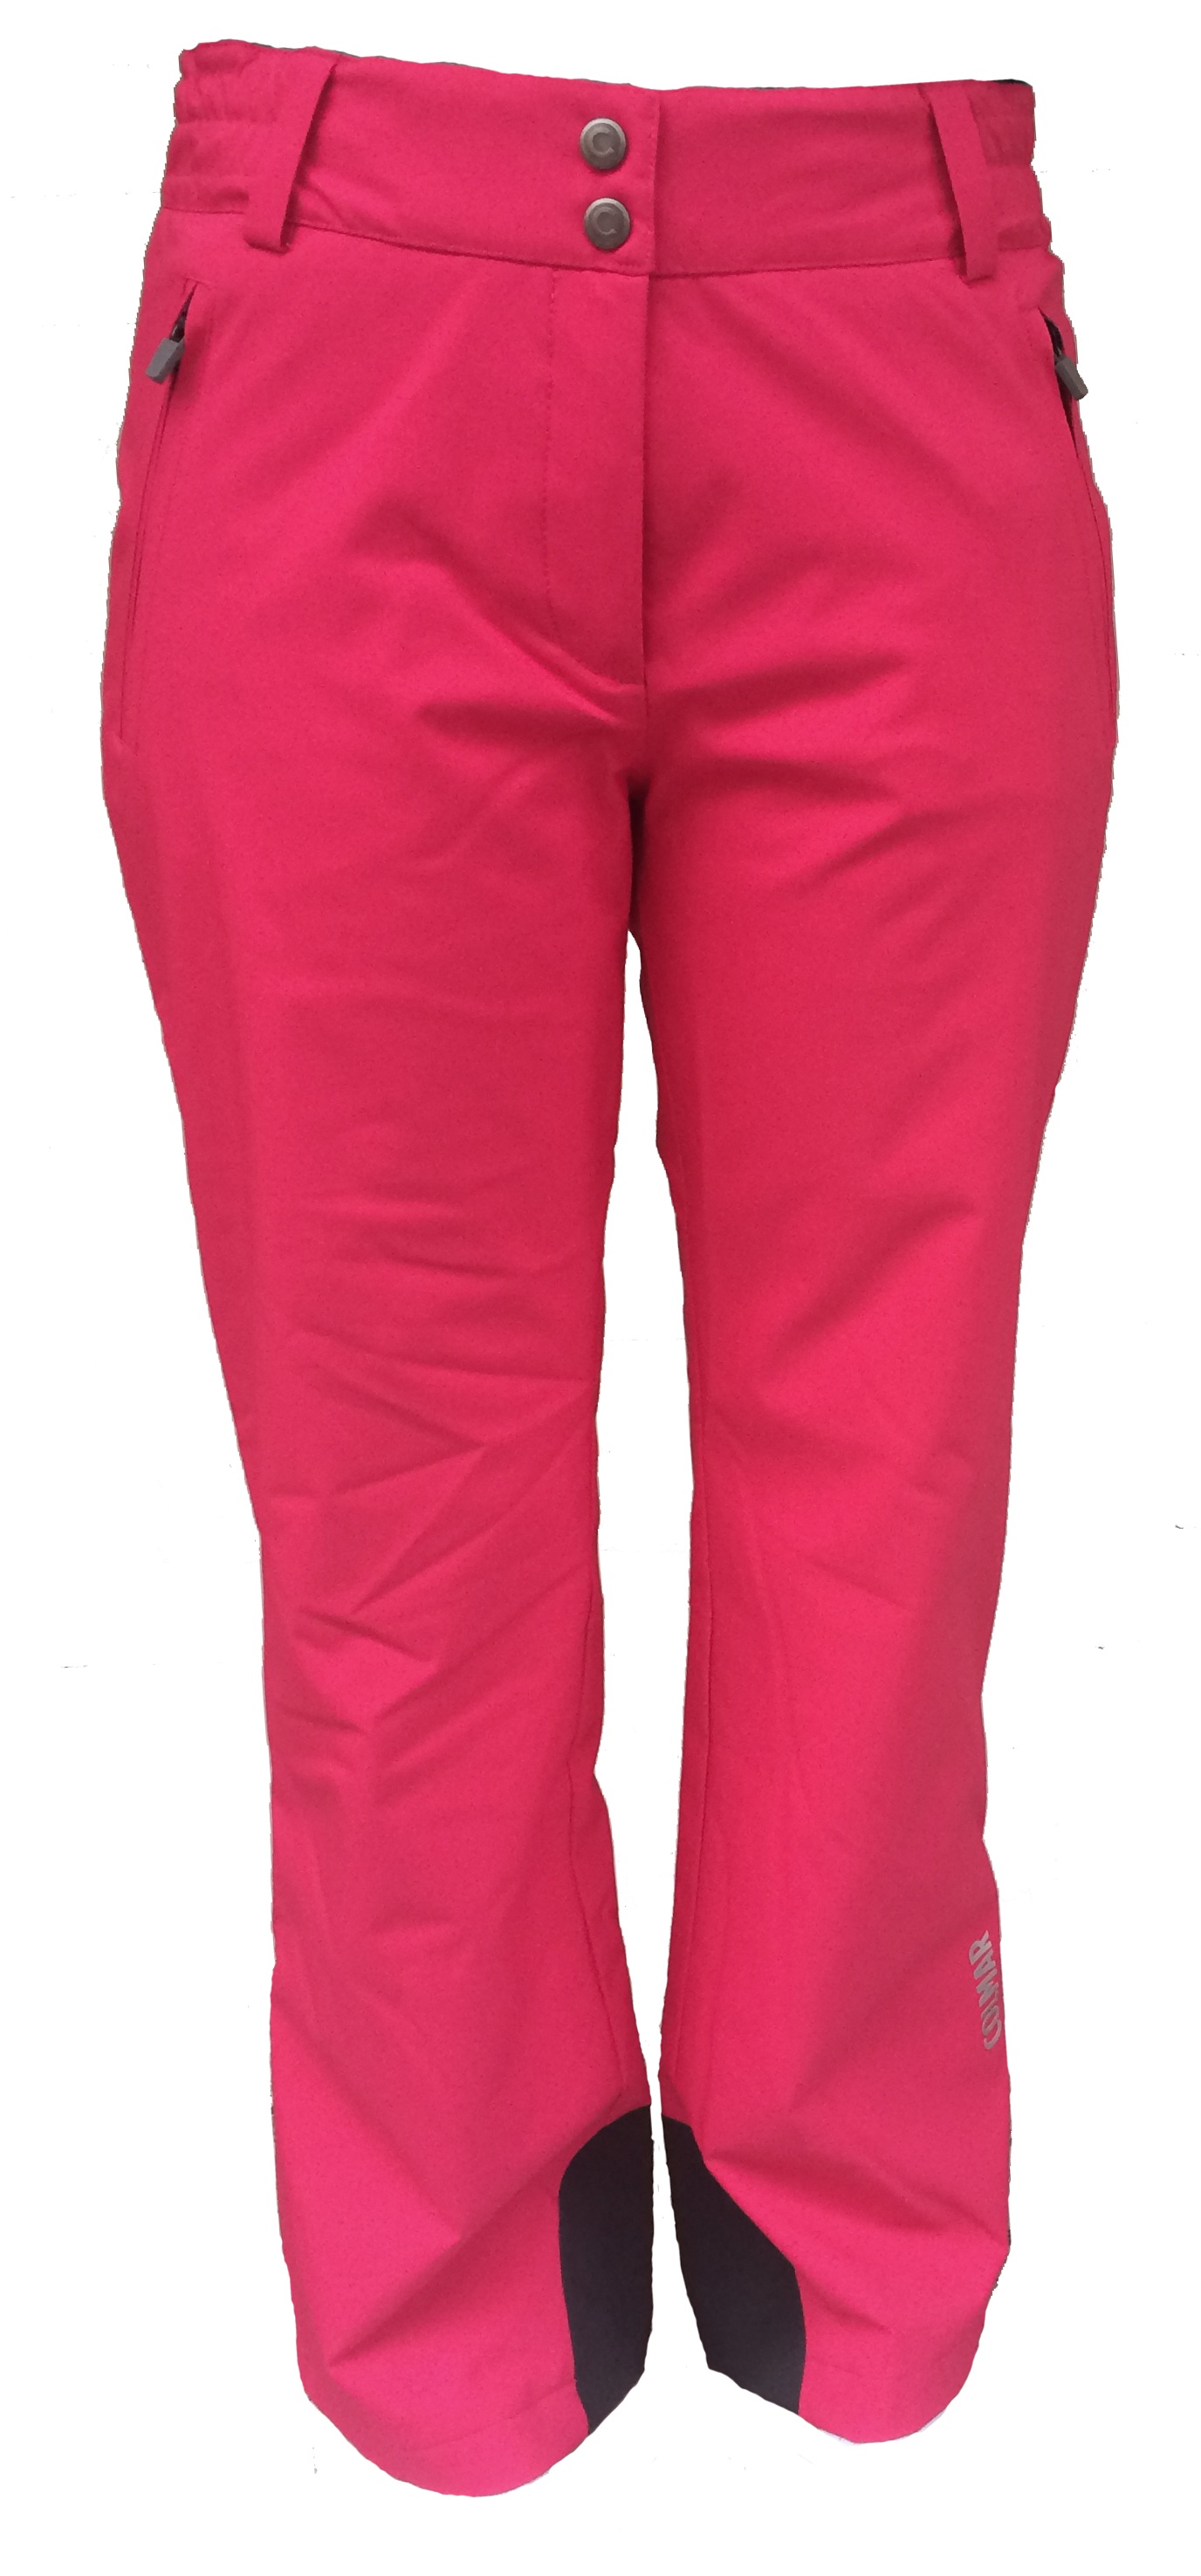 Kalhoty Colmar Ladies Pants 0439 Pink/black, model 2017/18 - Teamsport